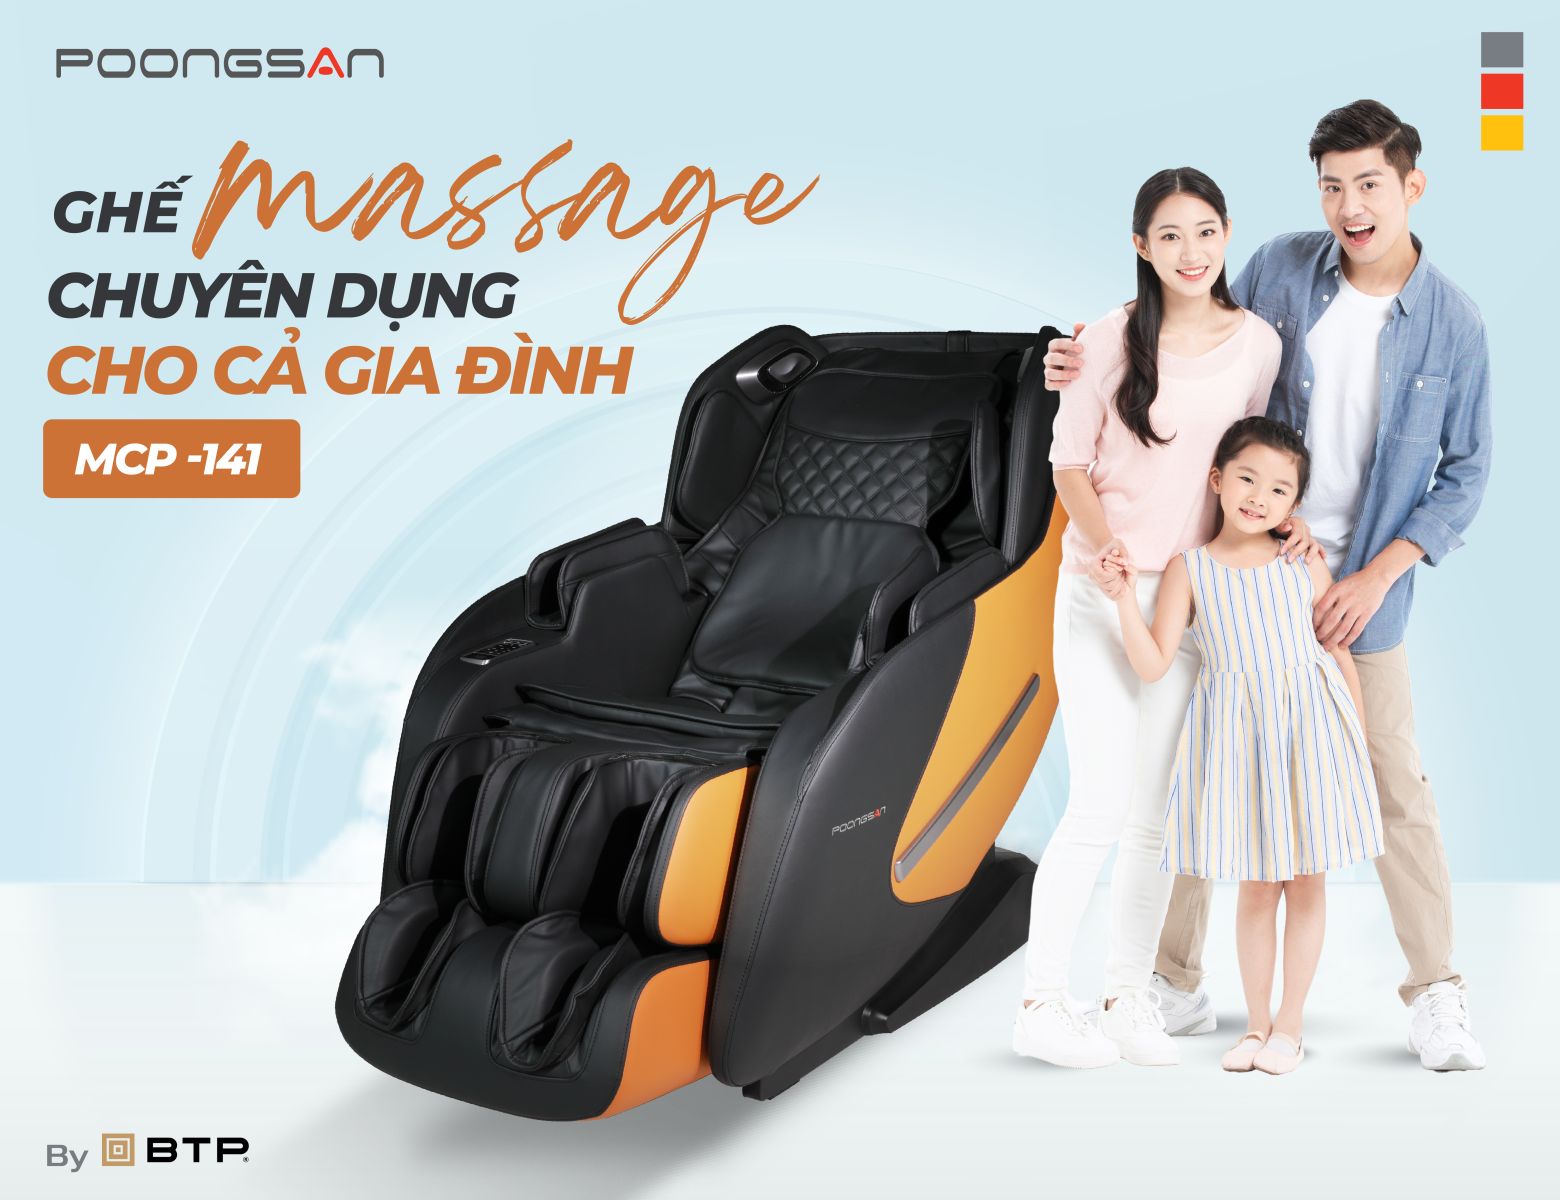 Ghế massage Poongsan MCP-141 chuyên dụng cho cả gia đình